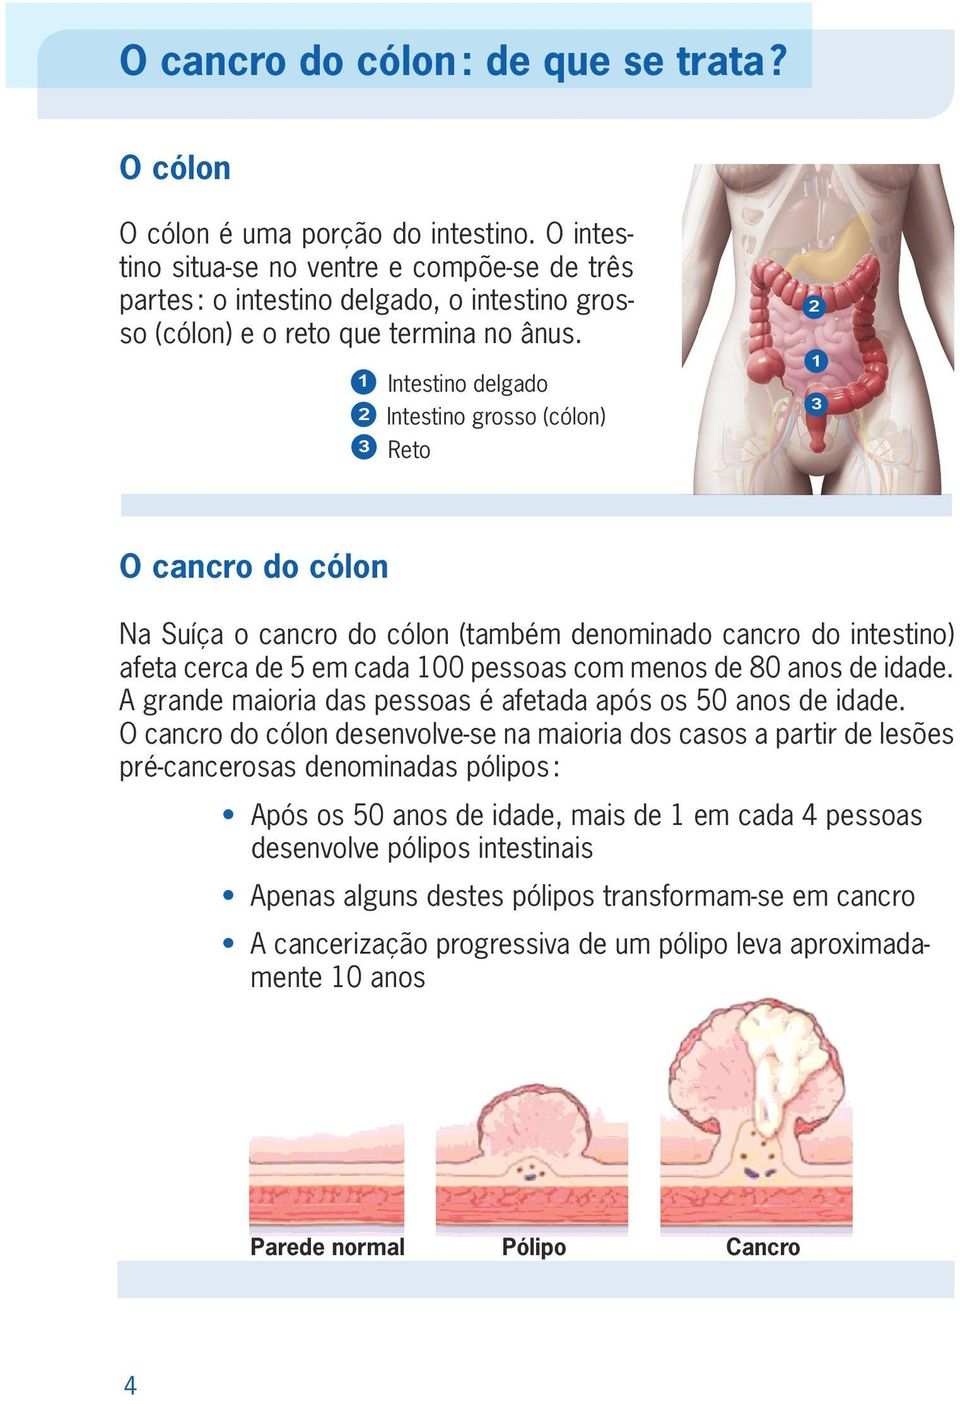 1 2 3 Intestino delgado Intestino grosso (cólon) Reto 2 1 3 O cancro do cólon Na Suíça o cancro do cólon (também denominado cancro do intestino) afeta cerca de 5 em cada 100 pessoas com menos de 80